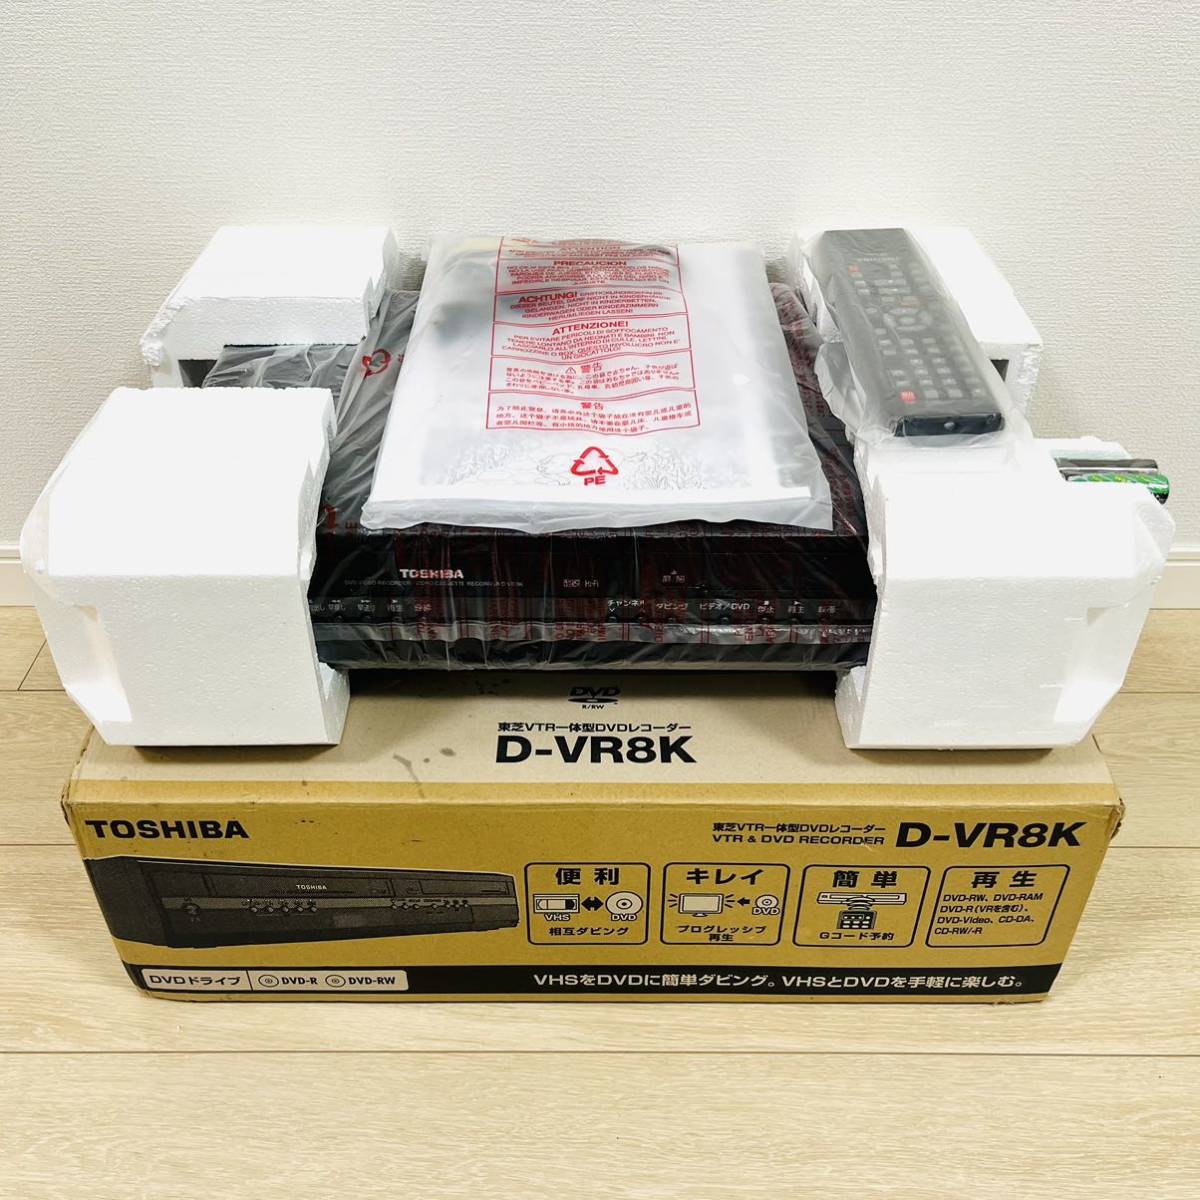 【未使用品】TOSHIBA D-VR8K 東芝 VTR一体型 DVDレコーダーの画像1